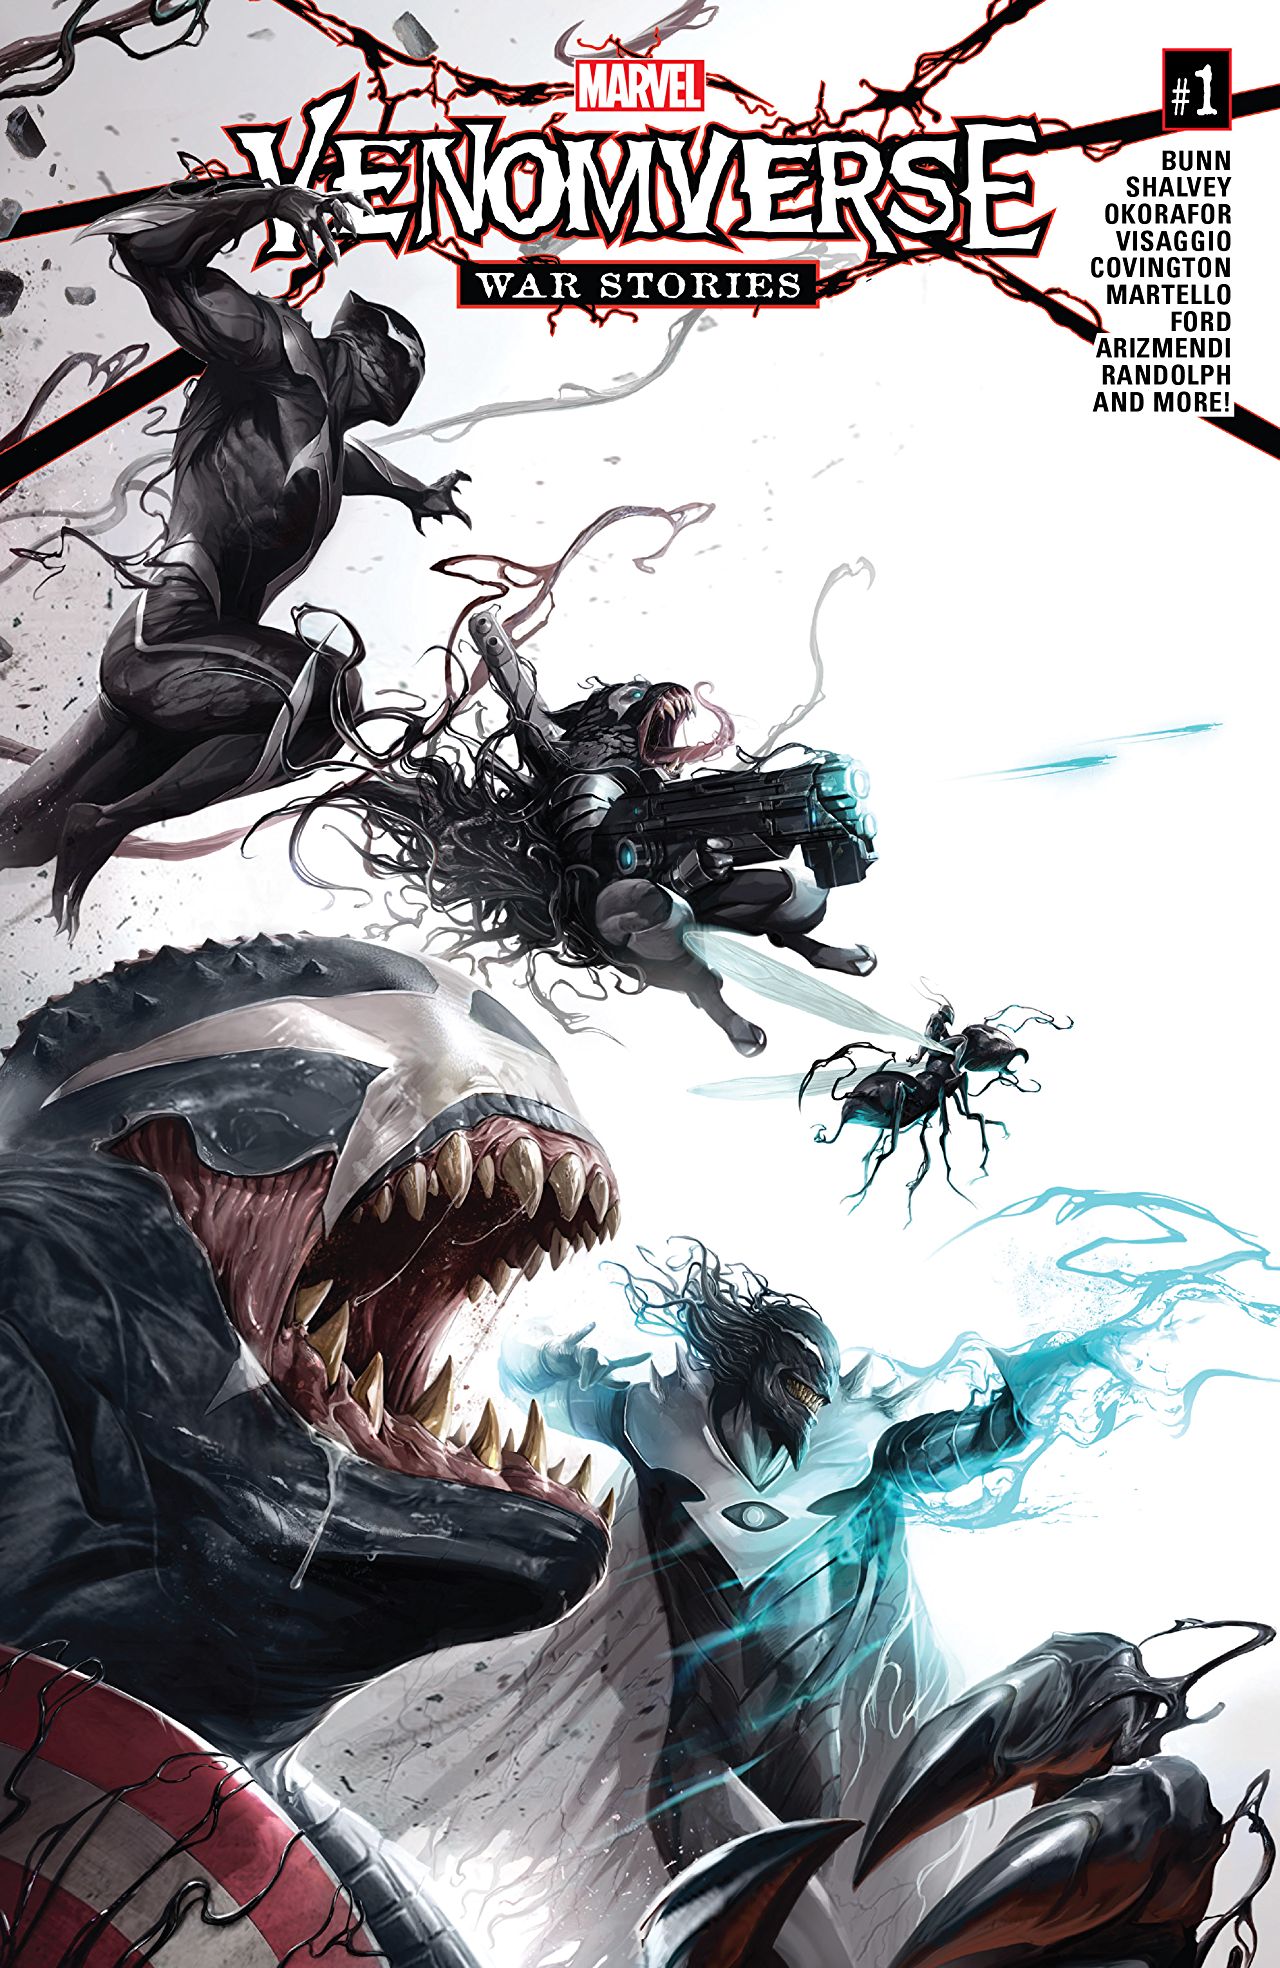 Venomverse: War Stories #1 Review